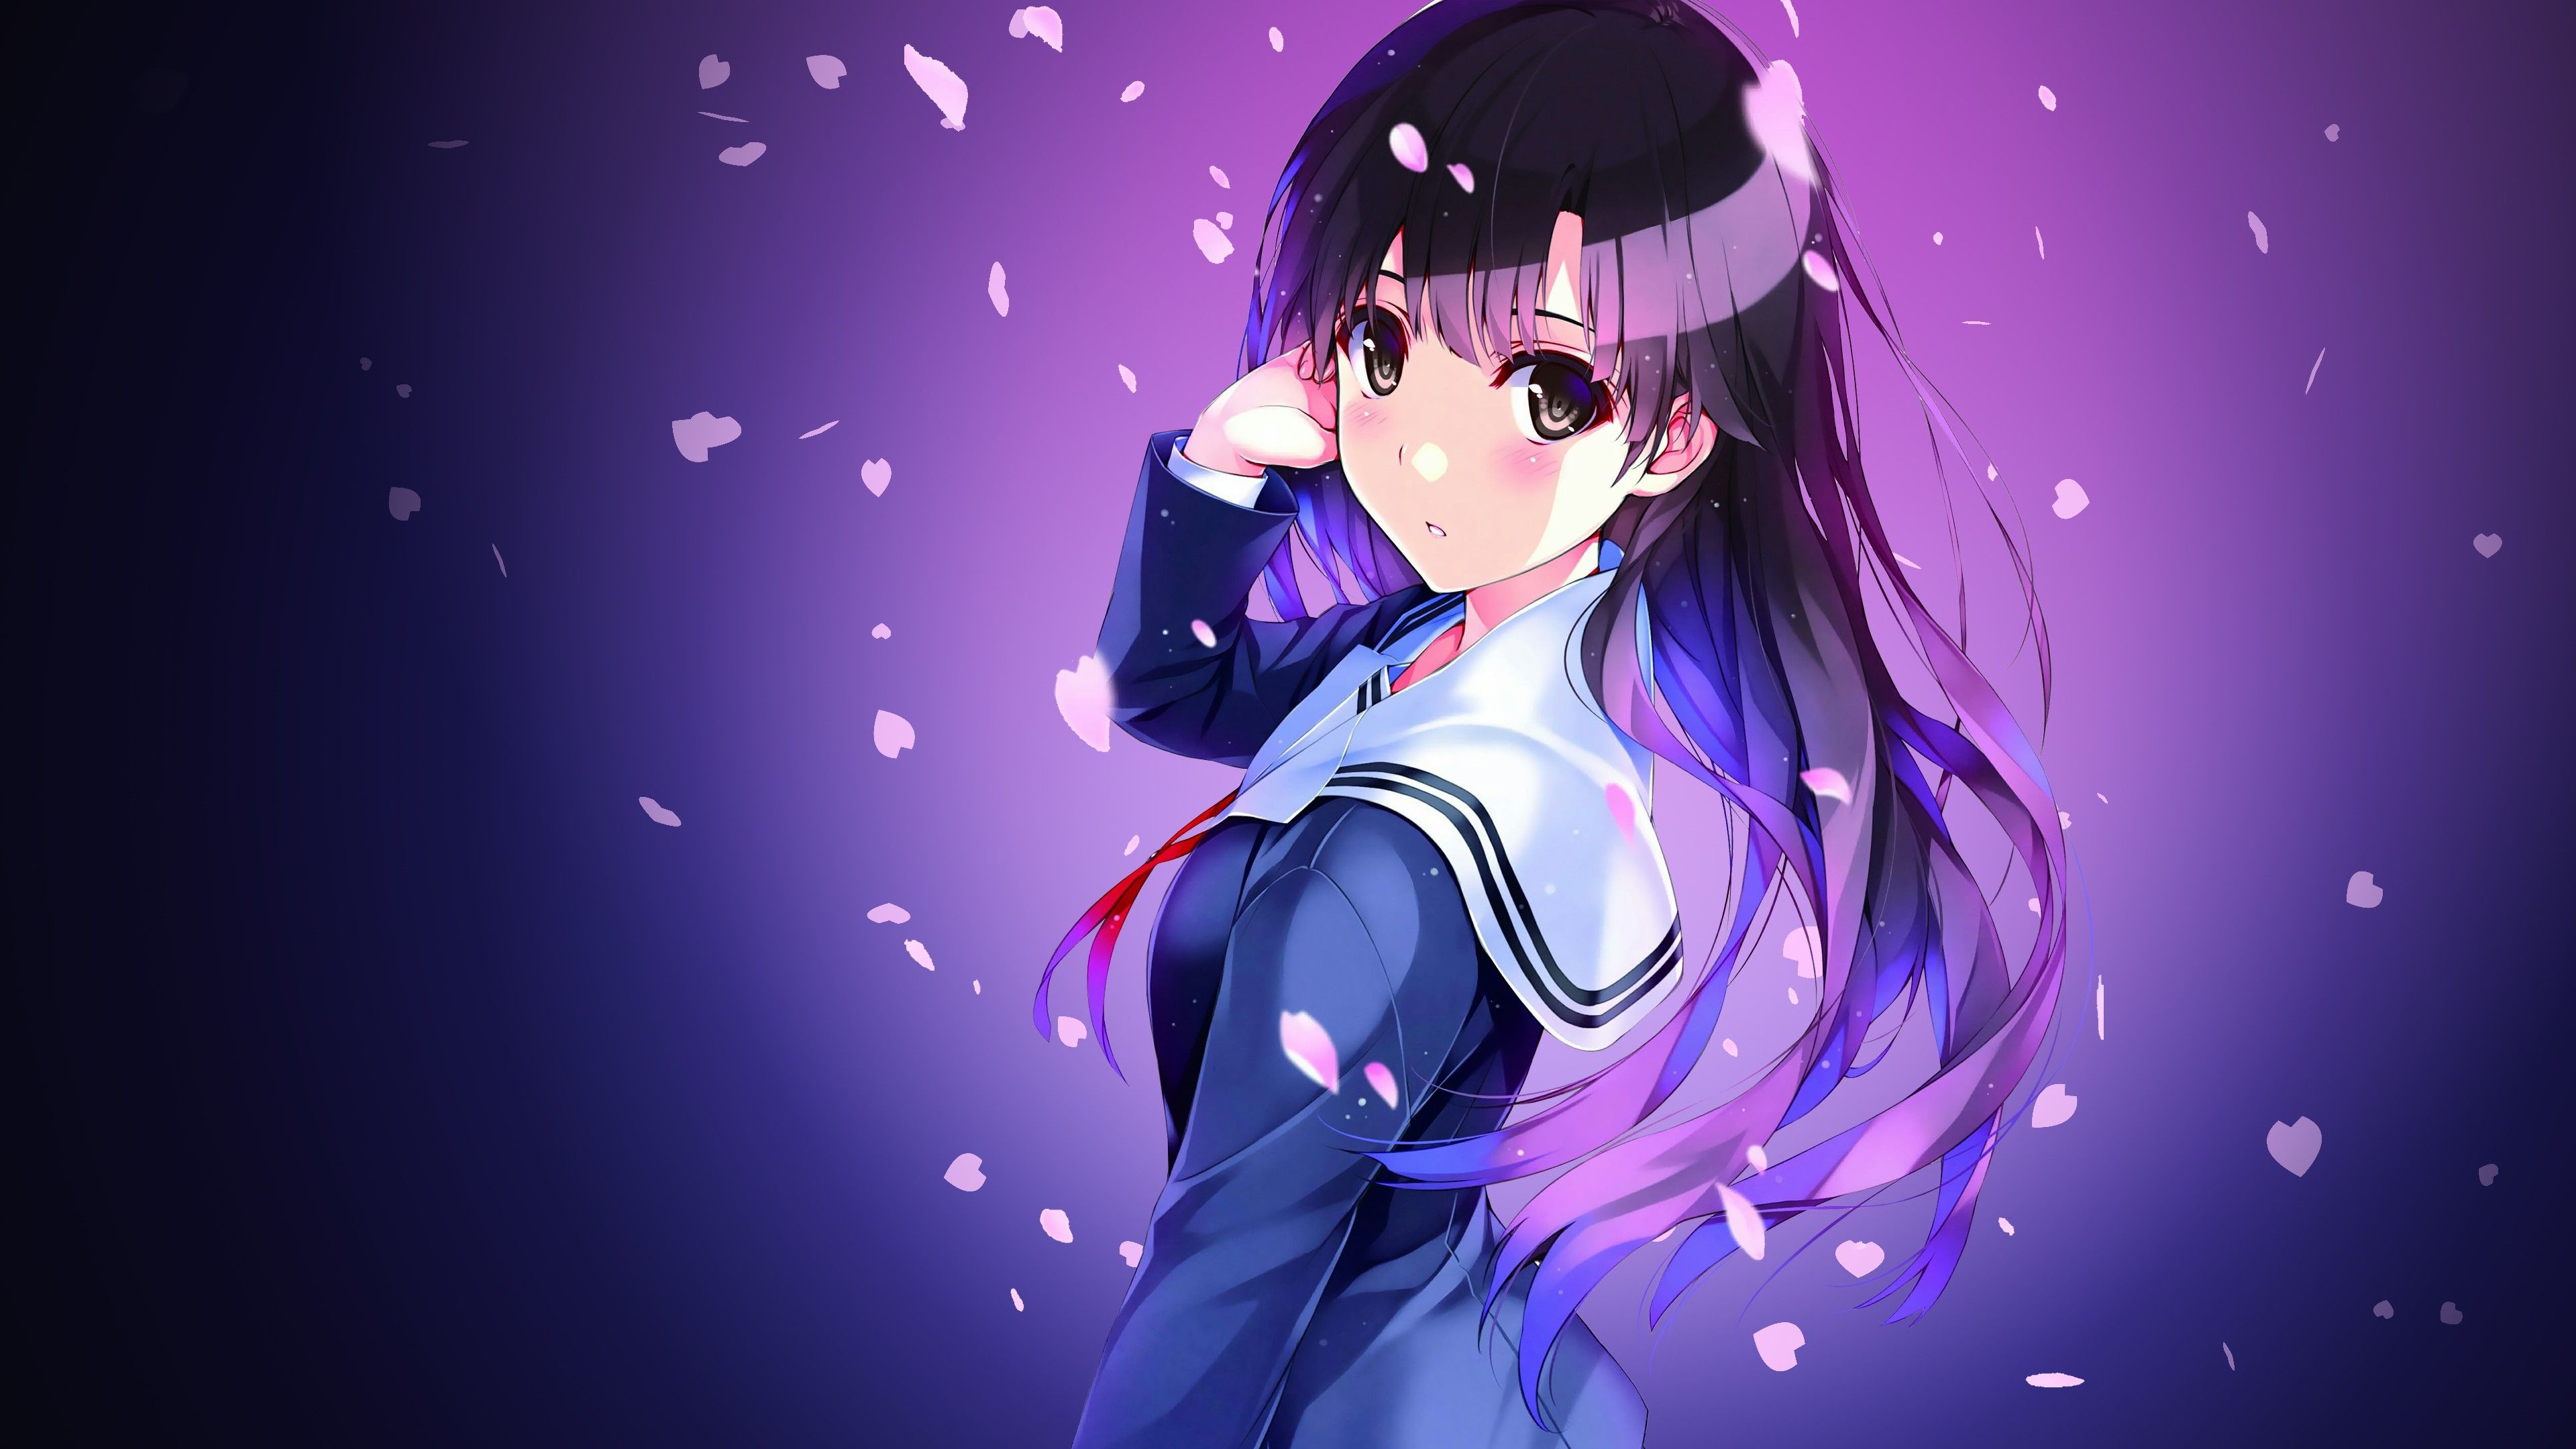 Wallpaper Anime girl, Lollipop, 4K, Anime \/ Most Popular. Total